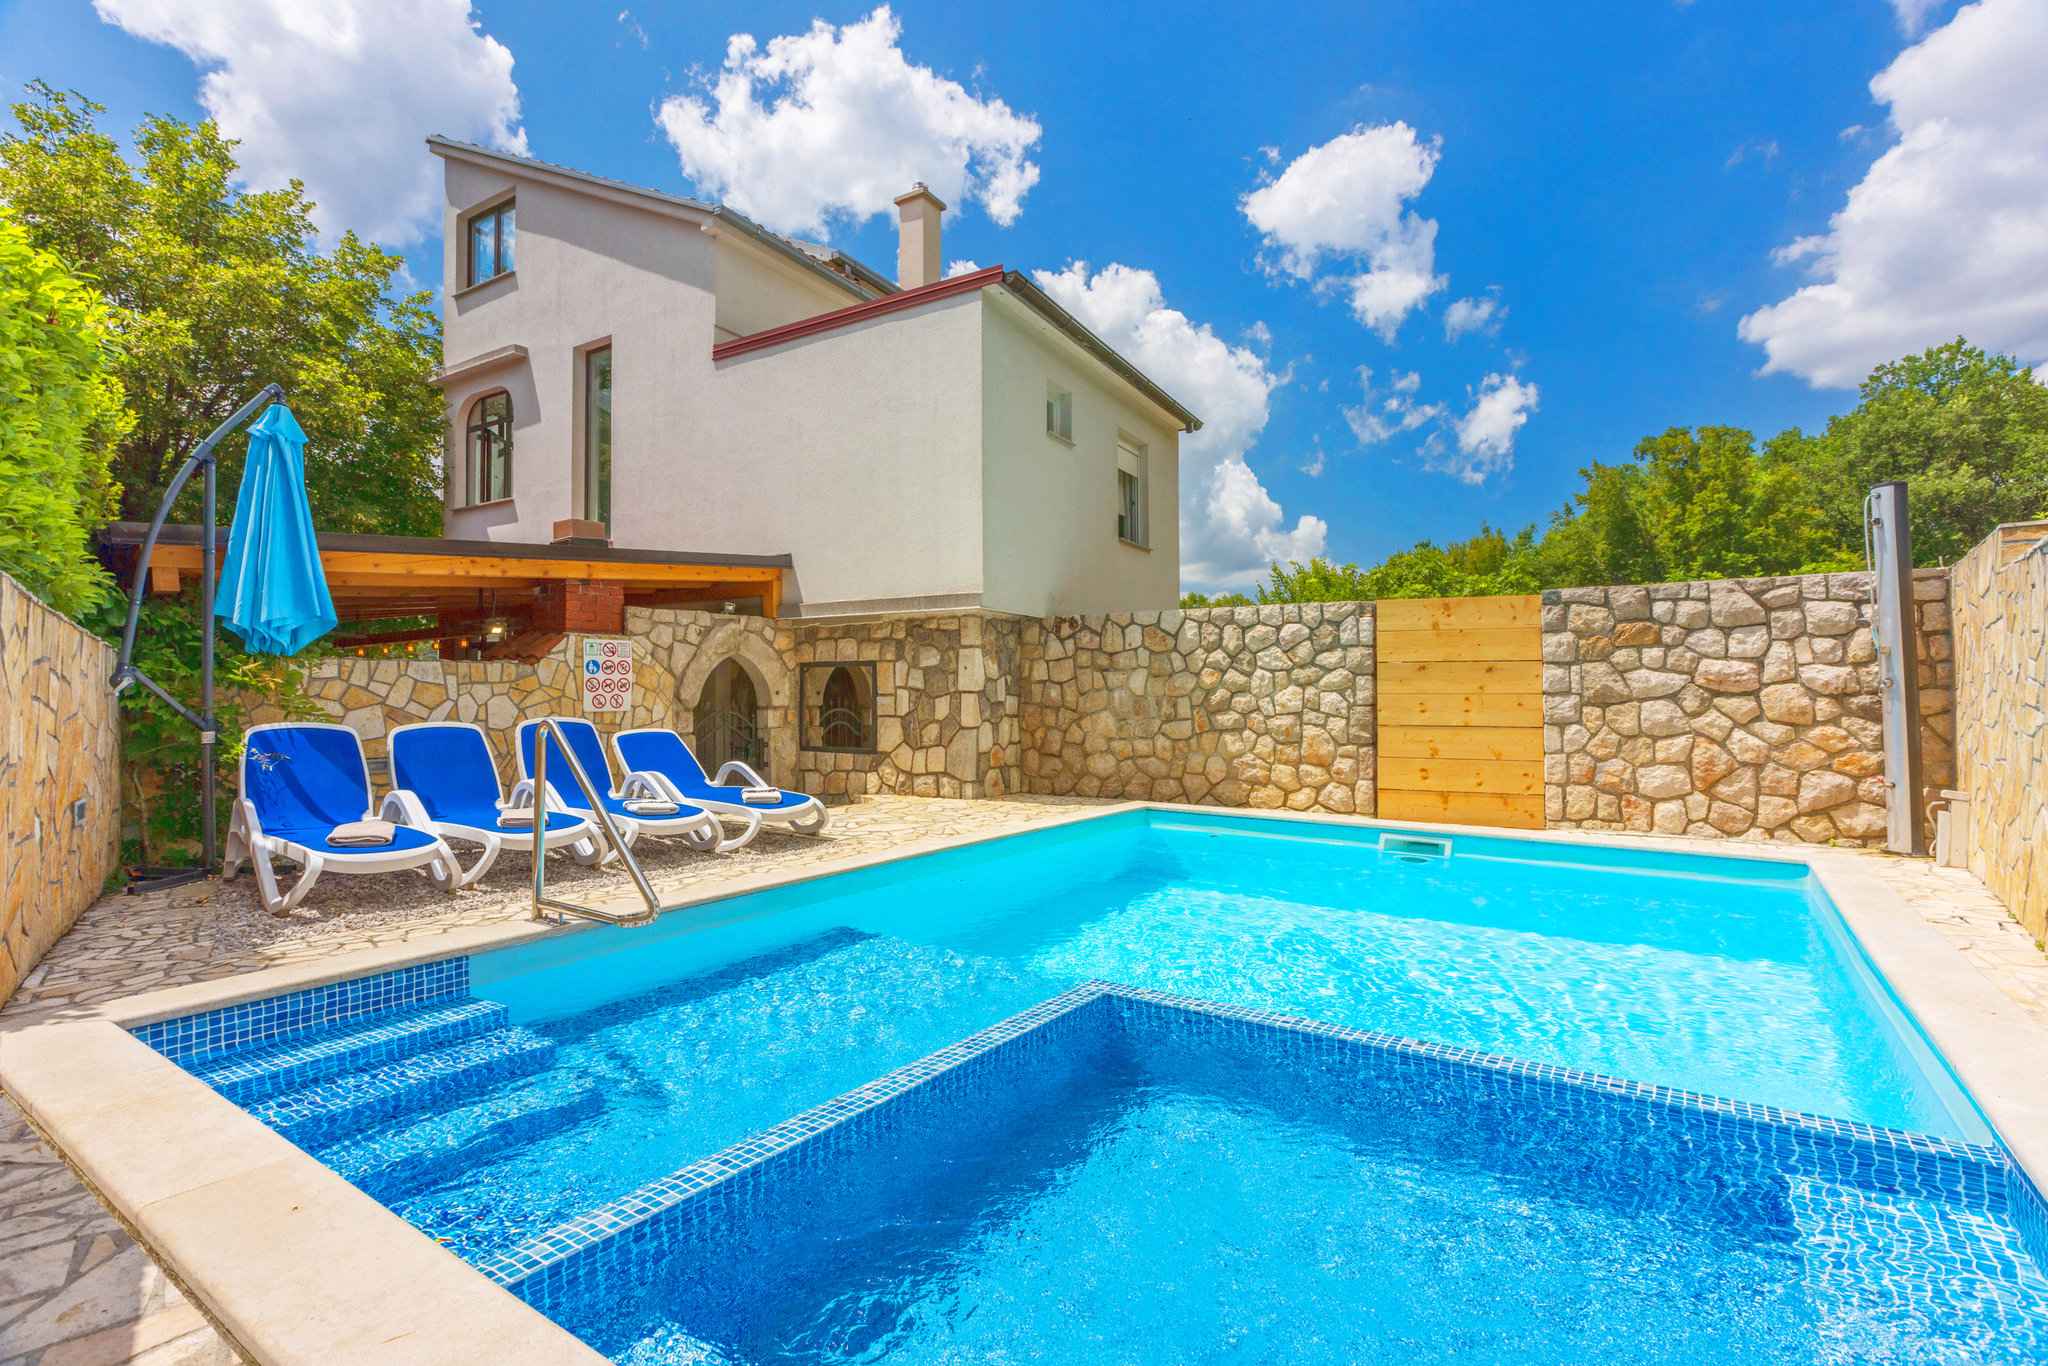 Ferienwohnung in ruhiger Lage mit Whirlpool, Swimm  in Kroatien